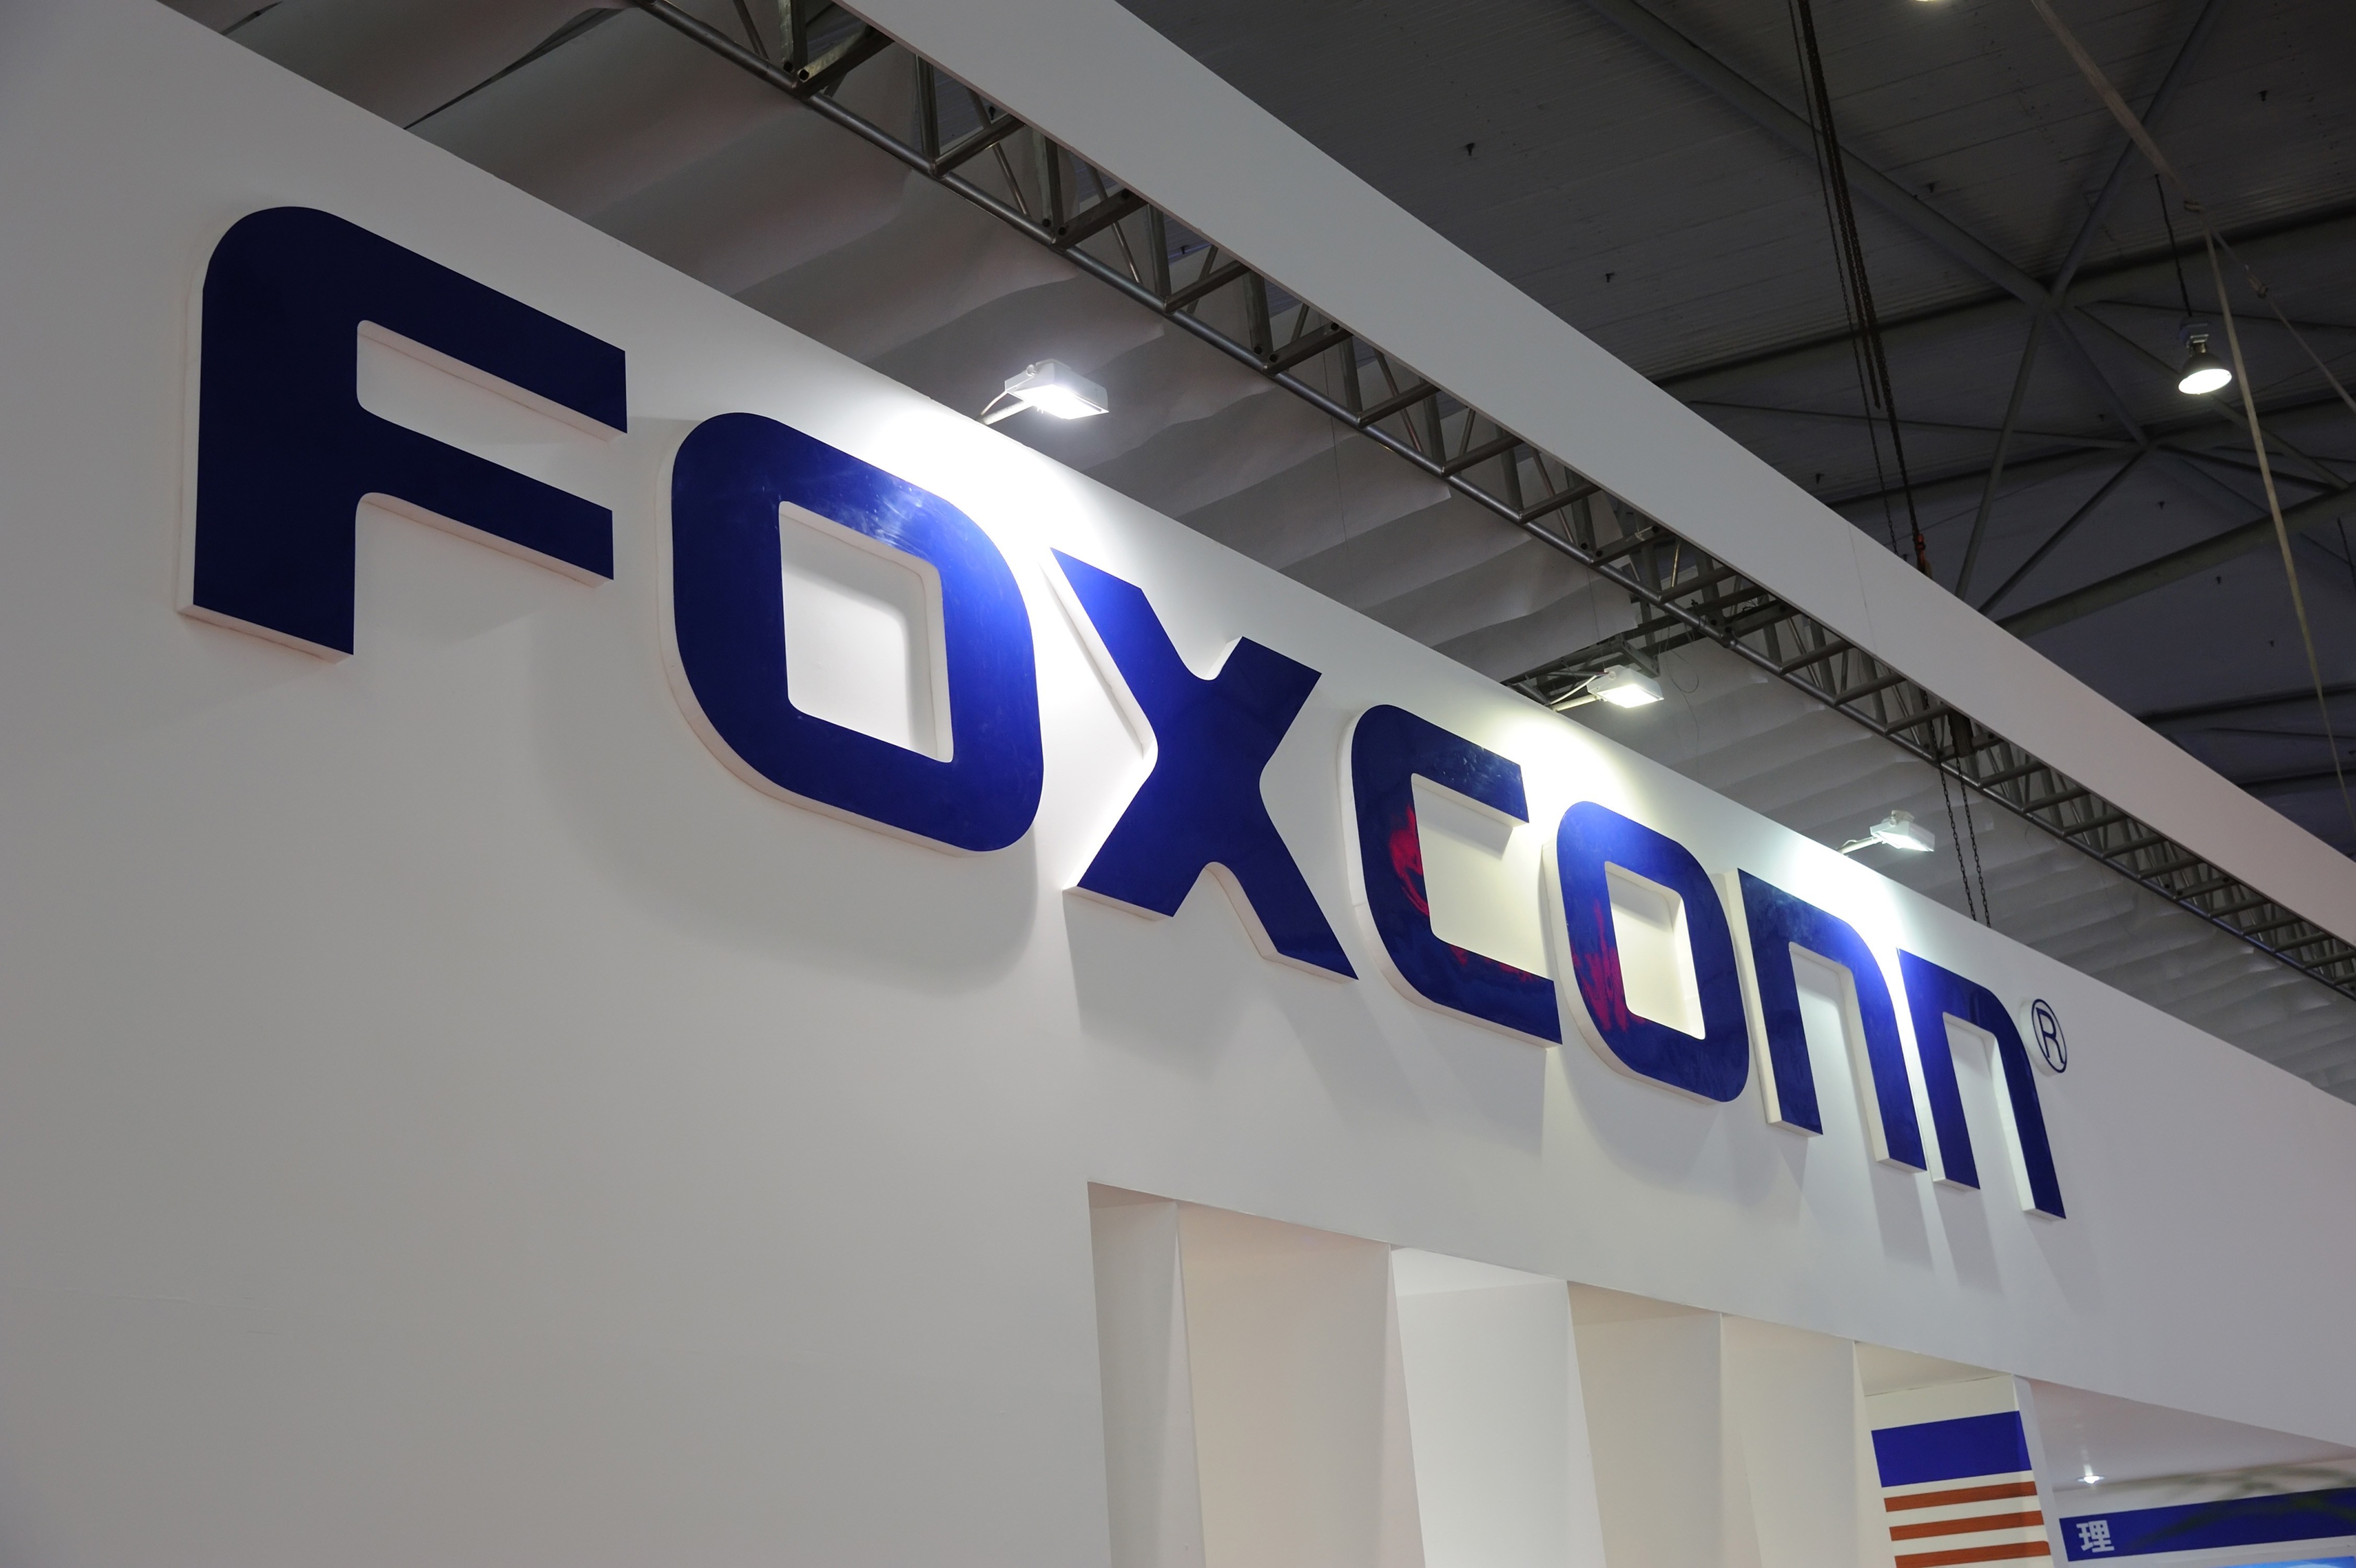 Foxconn th&agrave;nh lập tại Đ&agrave;i Loan với quy m&ocirc; lớn nhất thế giới trong lĩnh vực điện tử, c&ocirc;ng nghệ th&ocirc;ng tin v&agrave; m&aacute;y t&iacute;nh.